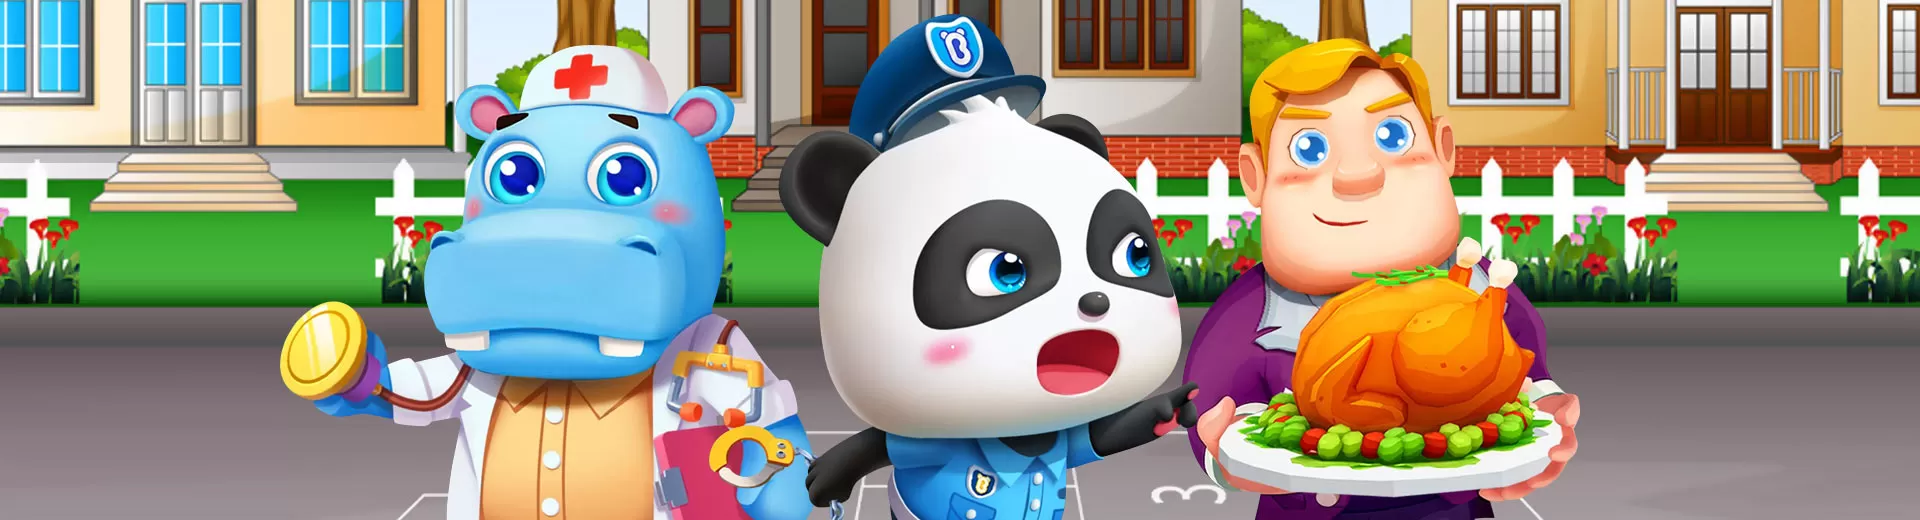 Baby Pandas Playhouse Emulator Pc